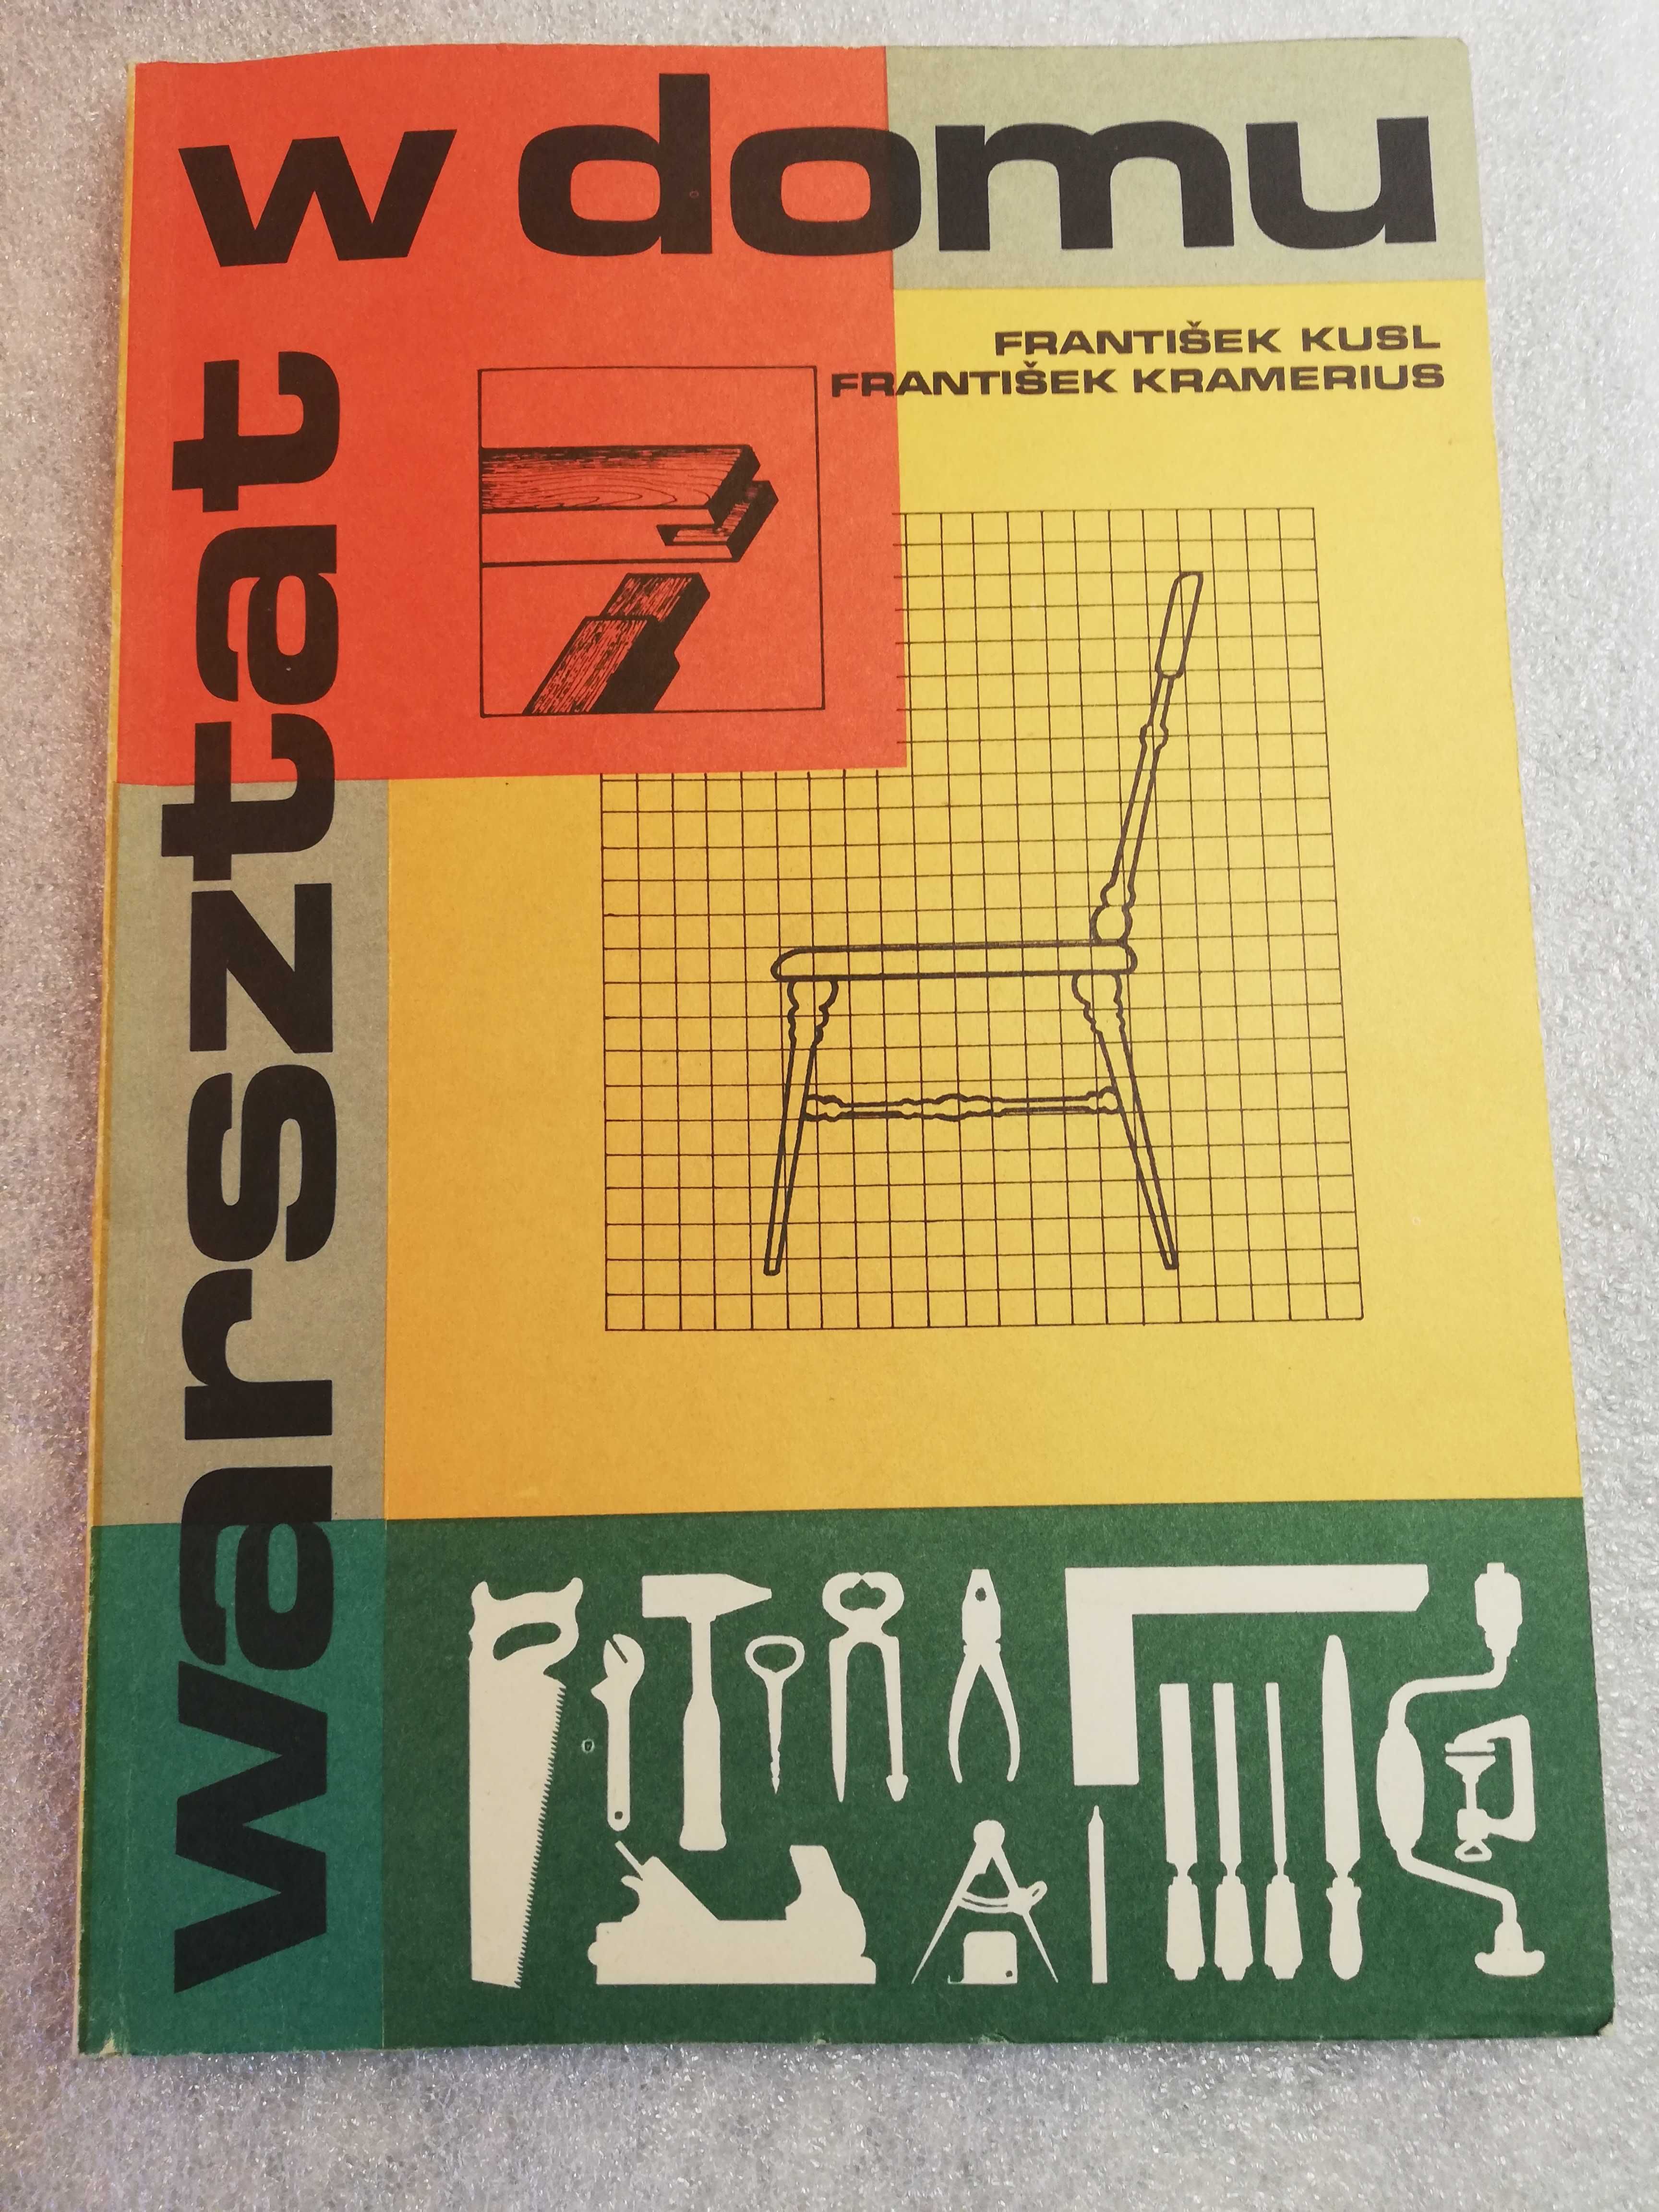 Warsztat w domu wskazówki praktyczne - Kusl, Kramerius  1986 wydanie I